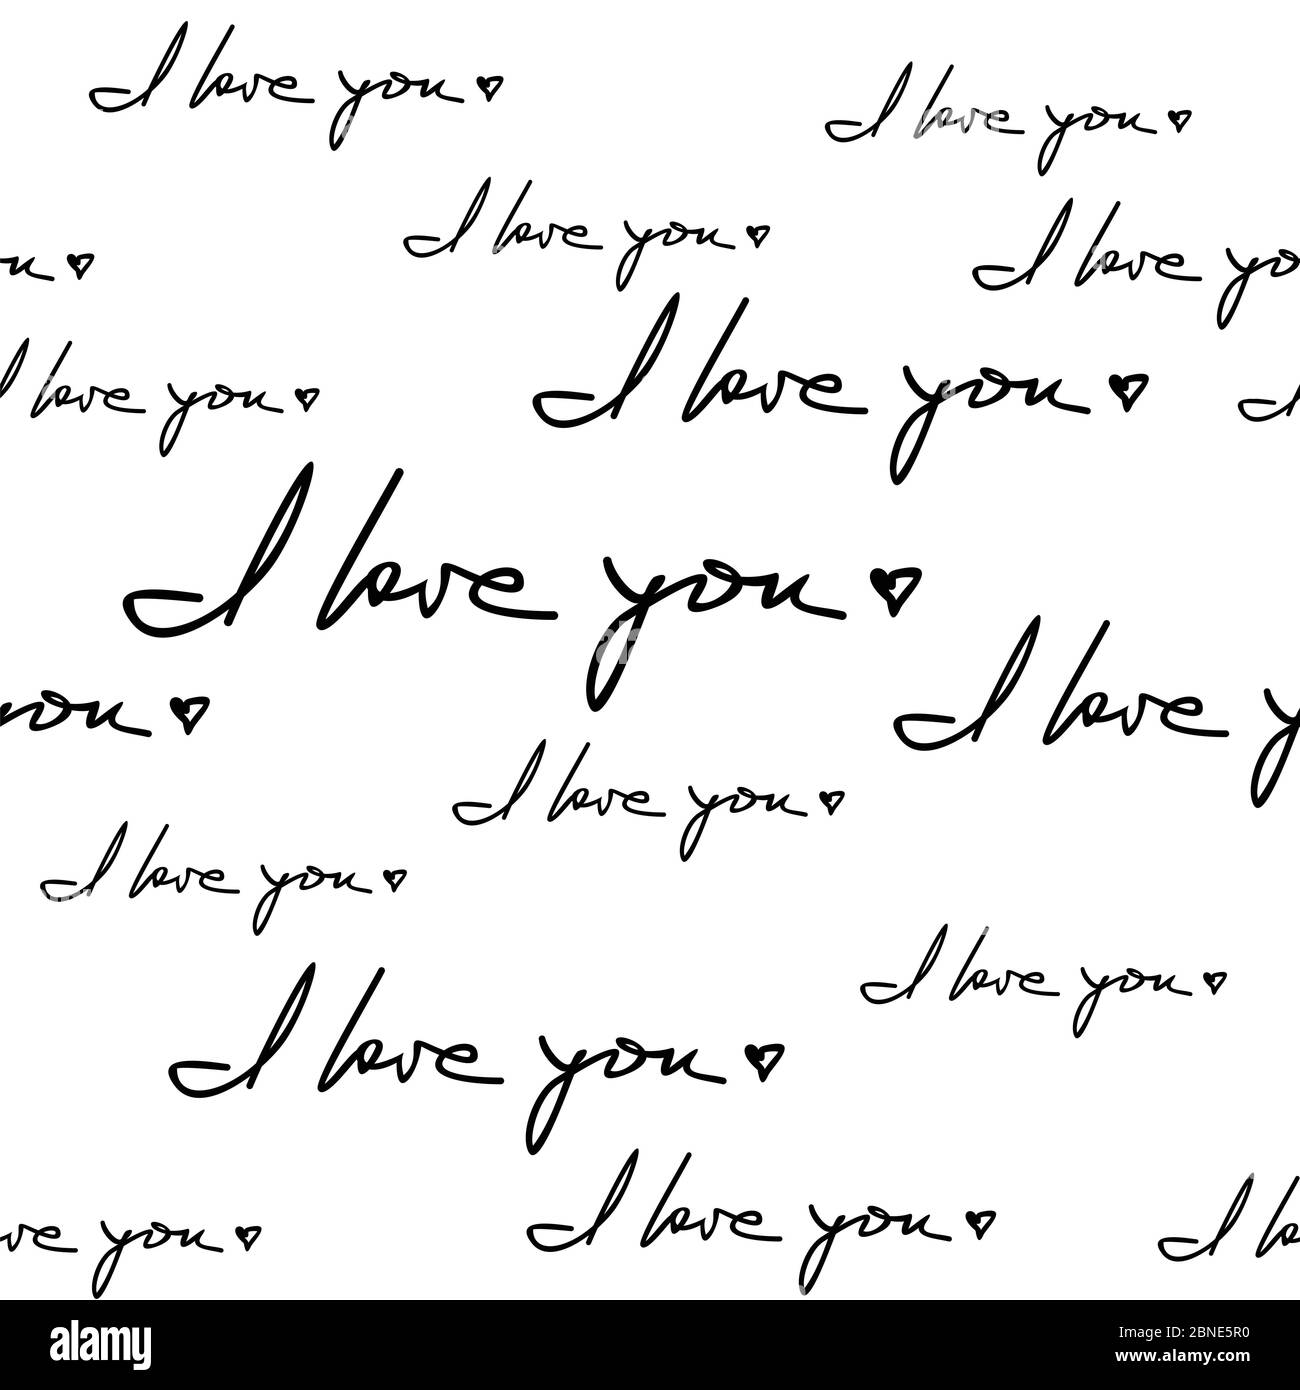 Ich liebe Sie Hand geschrieben Satz nahtlose Muster. Romantische Zitate zufällig auf weißem Hintergrund platziert. Verpackung Textur geeignet für Valentinstag gree Stock Vektor